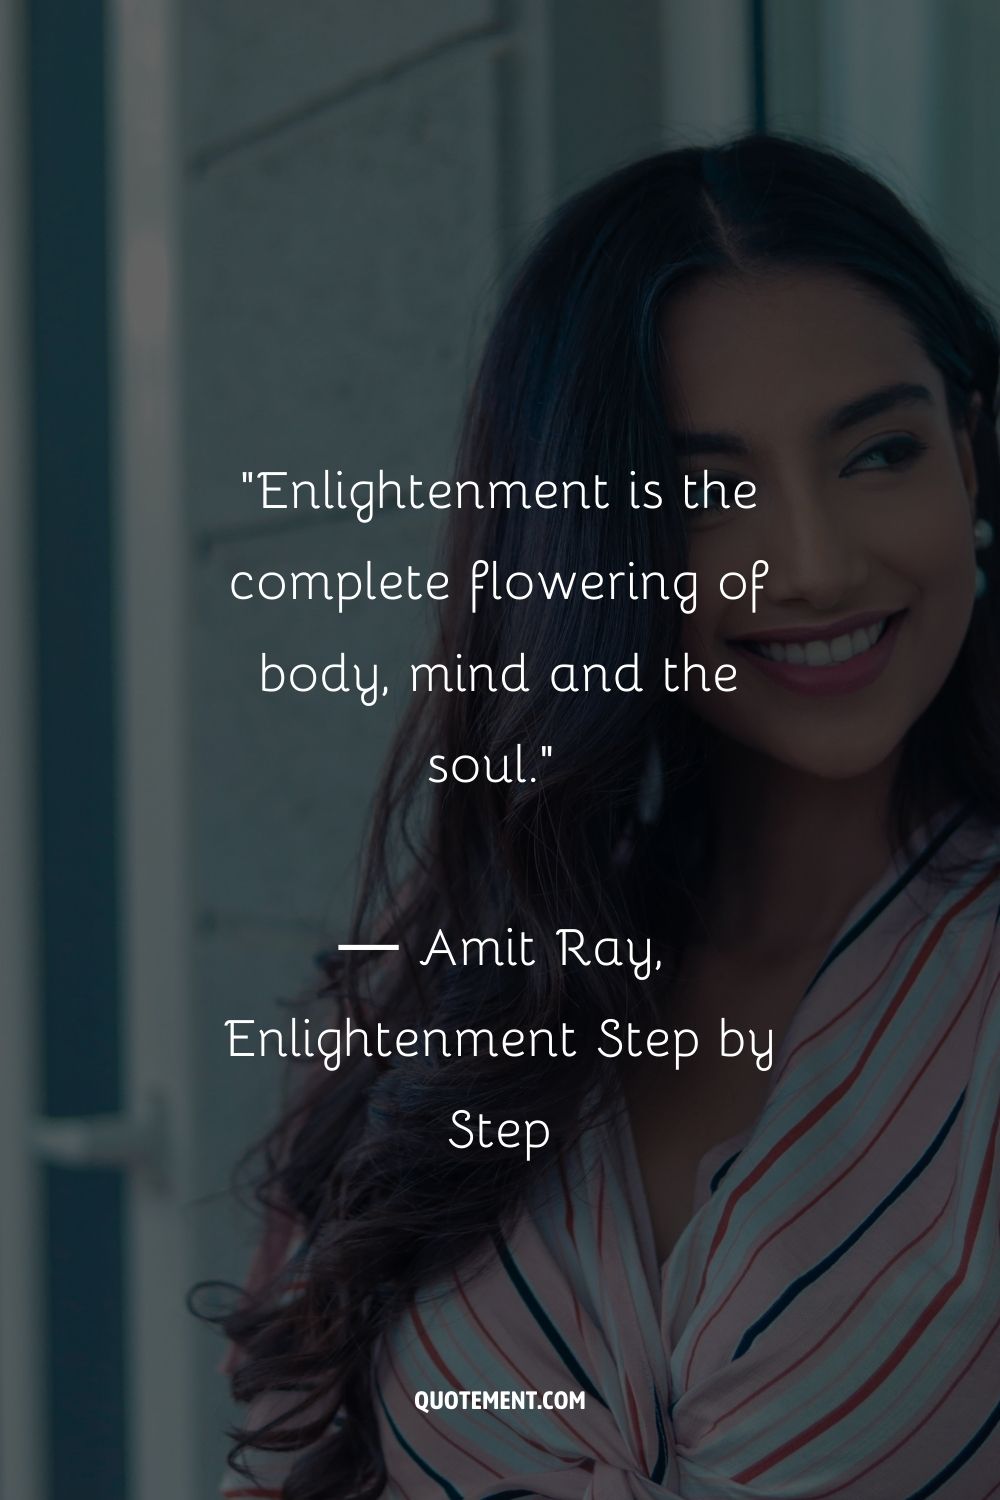 La iluminación es el florecimiento completo del cuerpo, la mente y el alma.